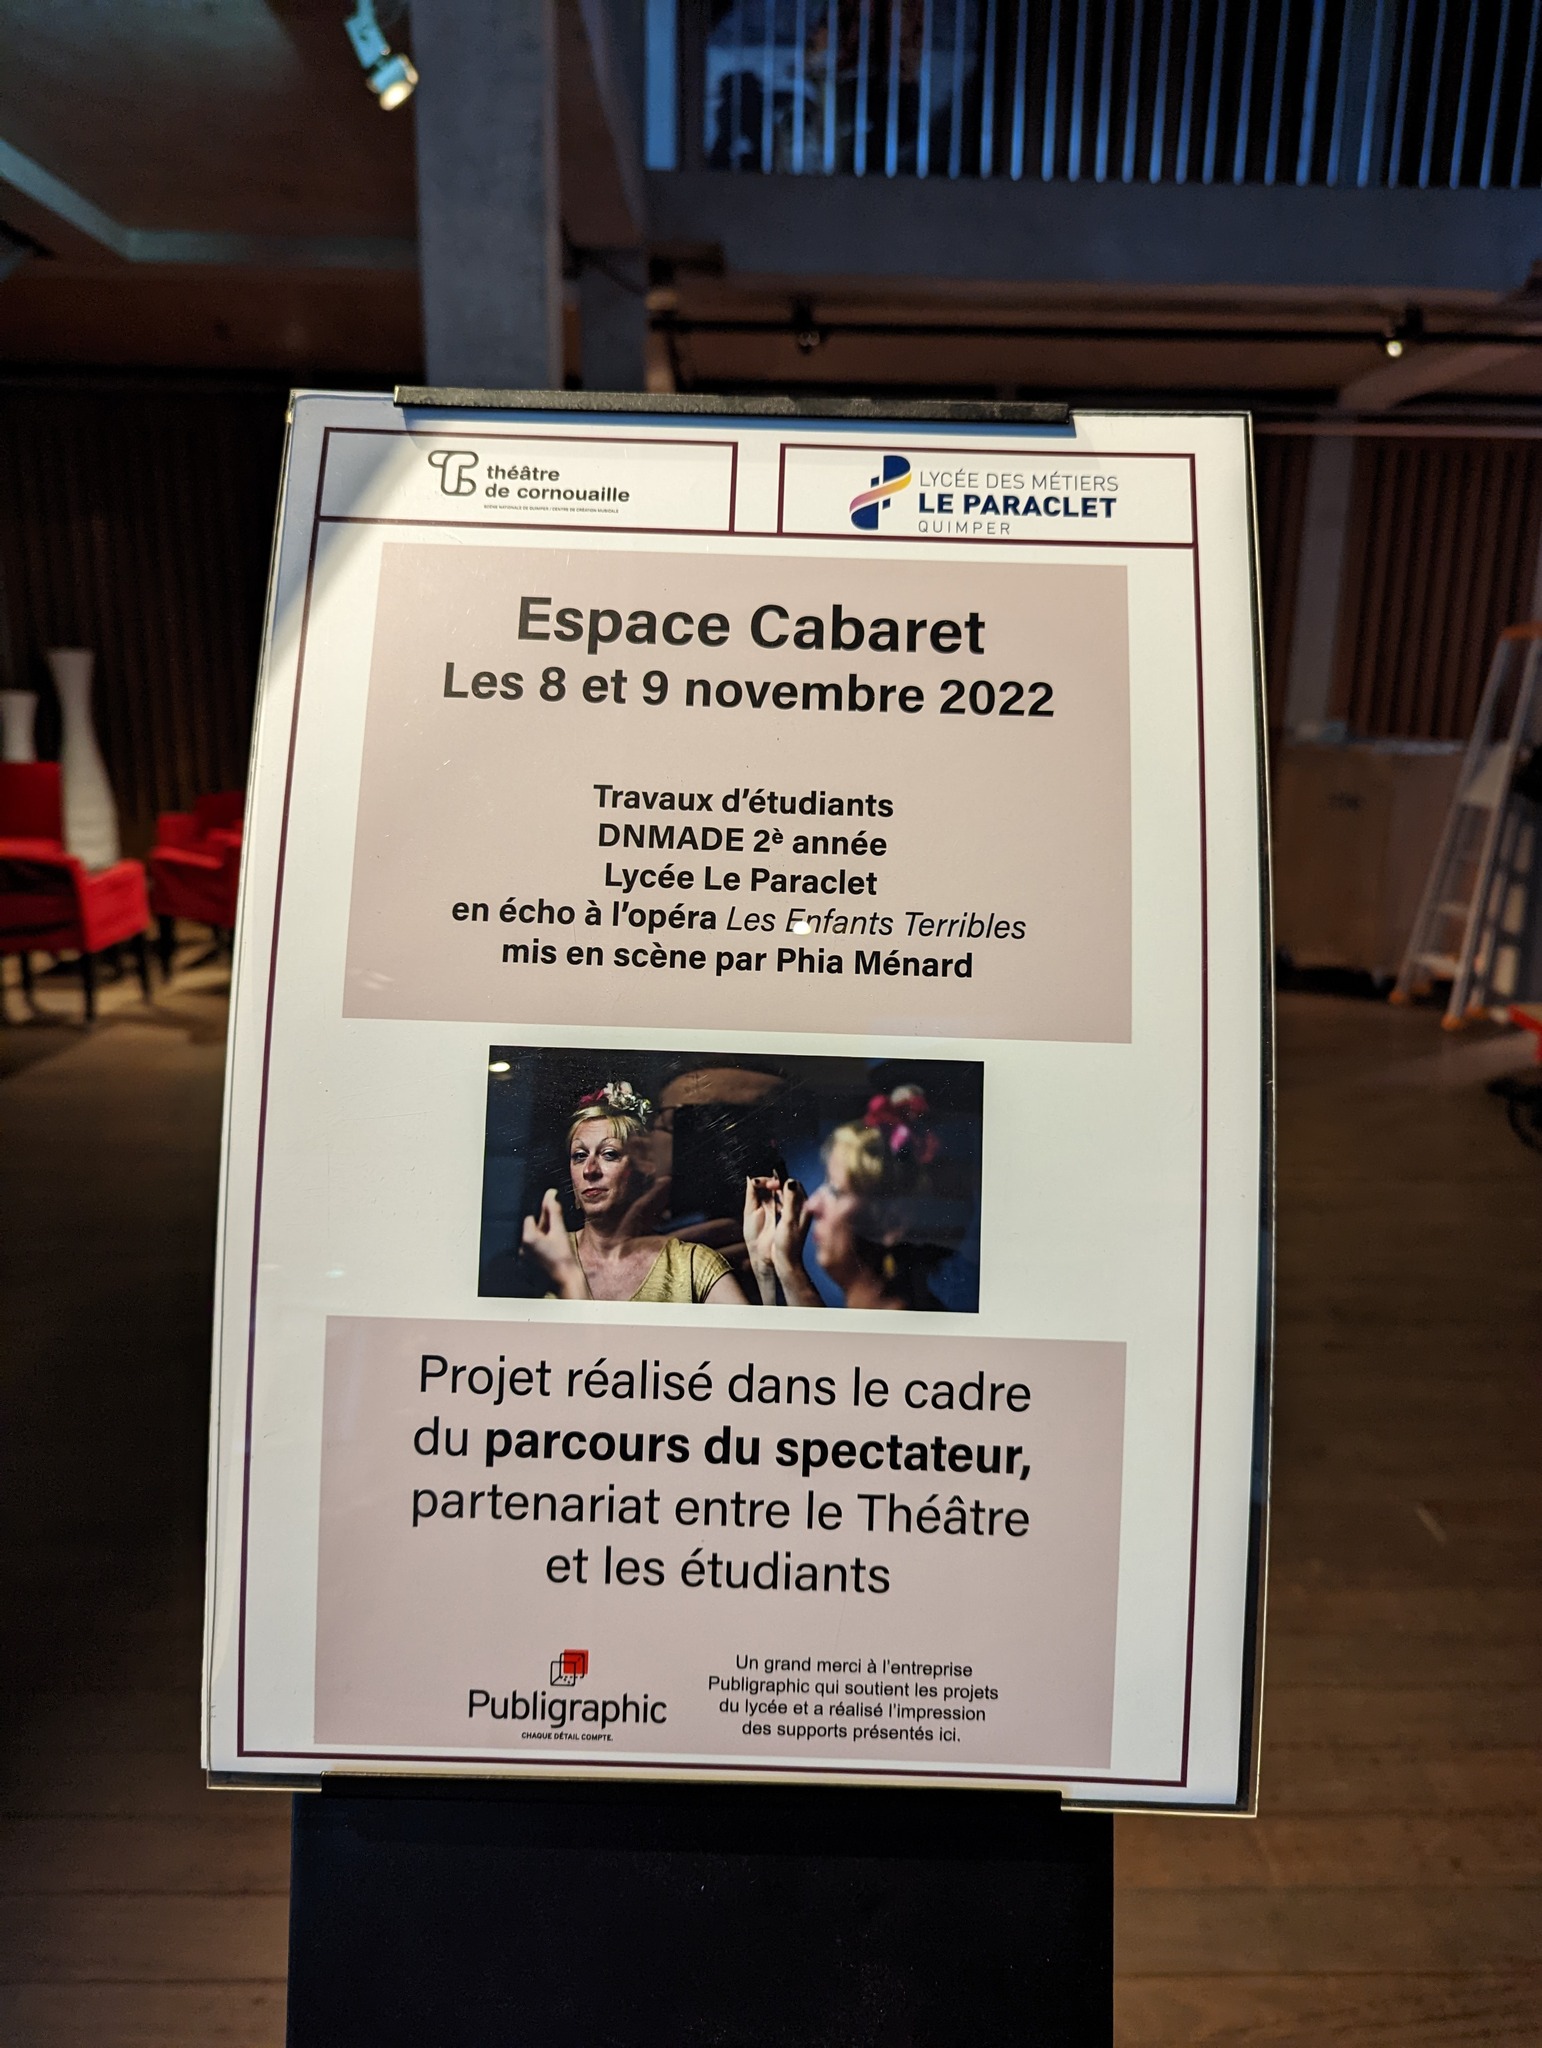 Partenariat Le Paraclet - Théâtre de Cornouaille - projet scénographie autour du spectacle "Les enfants terribles" de Jean Cocteau